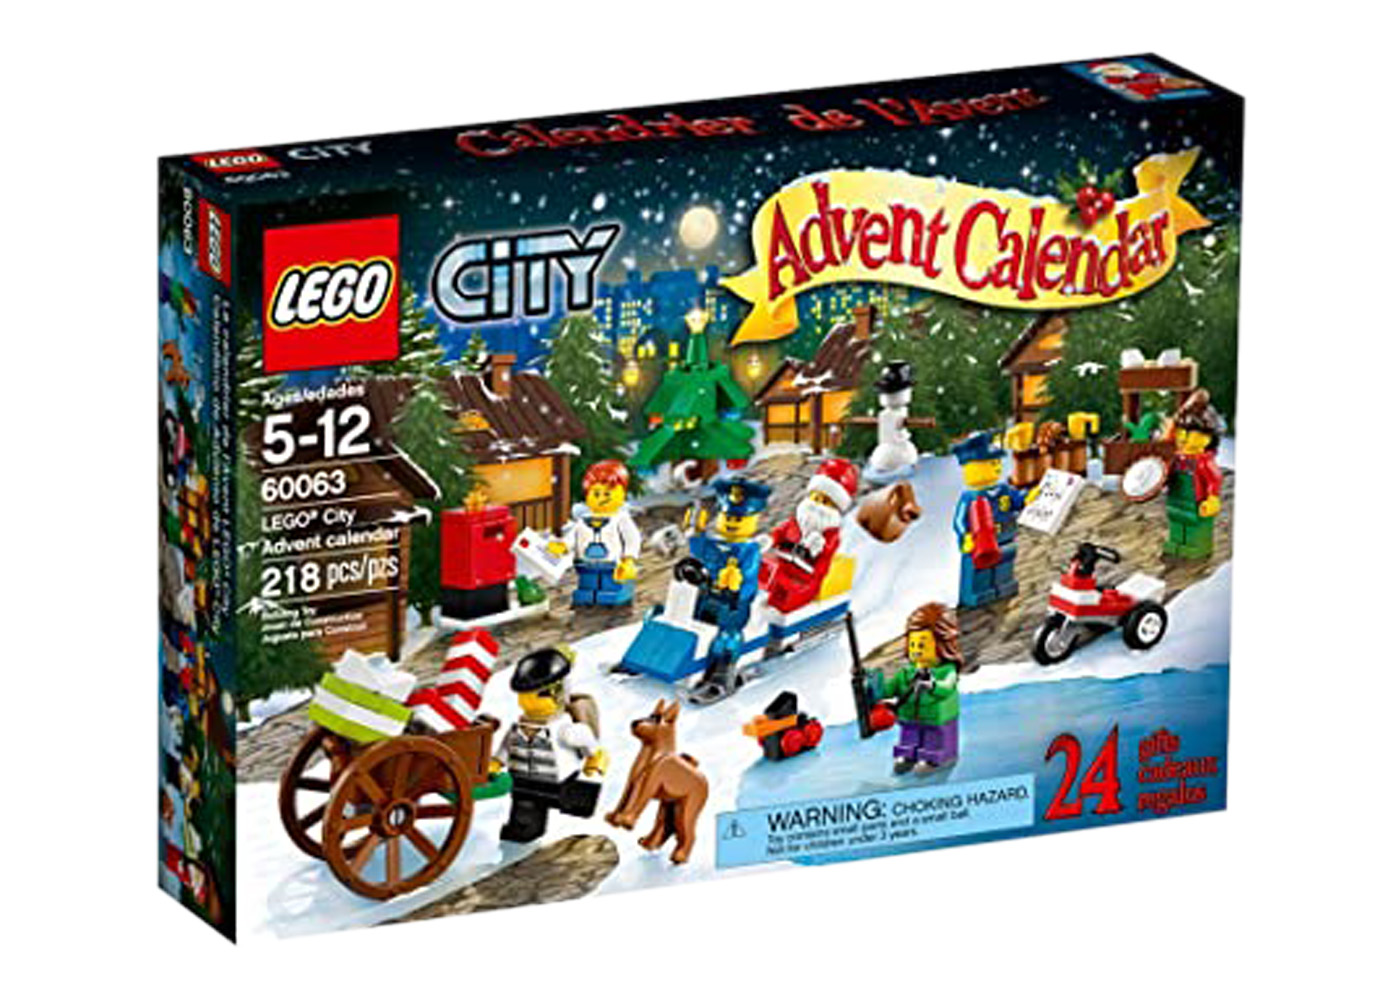 LEGO City Advent Calendar Set 60063 - US